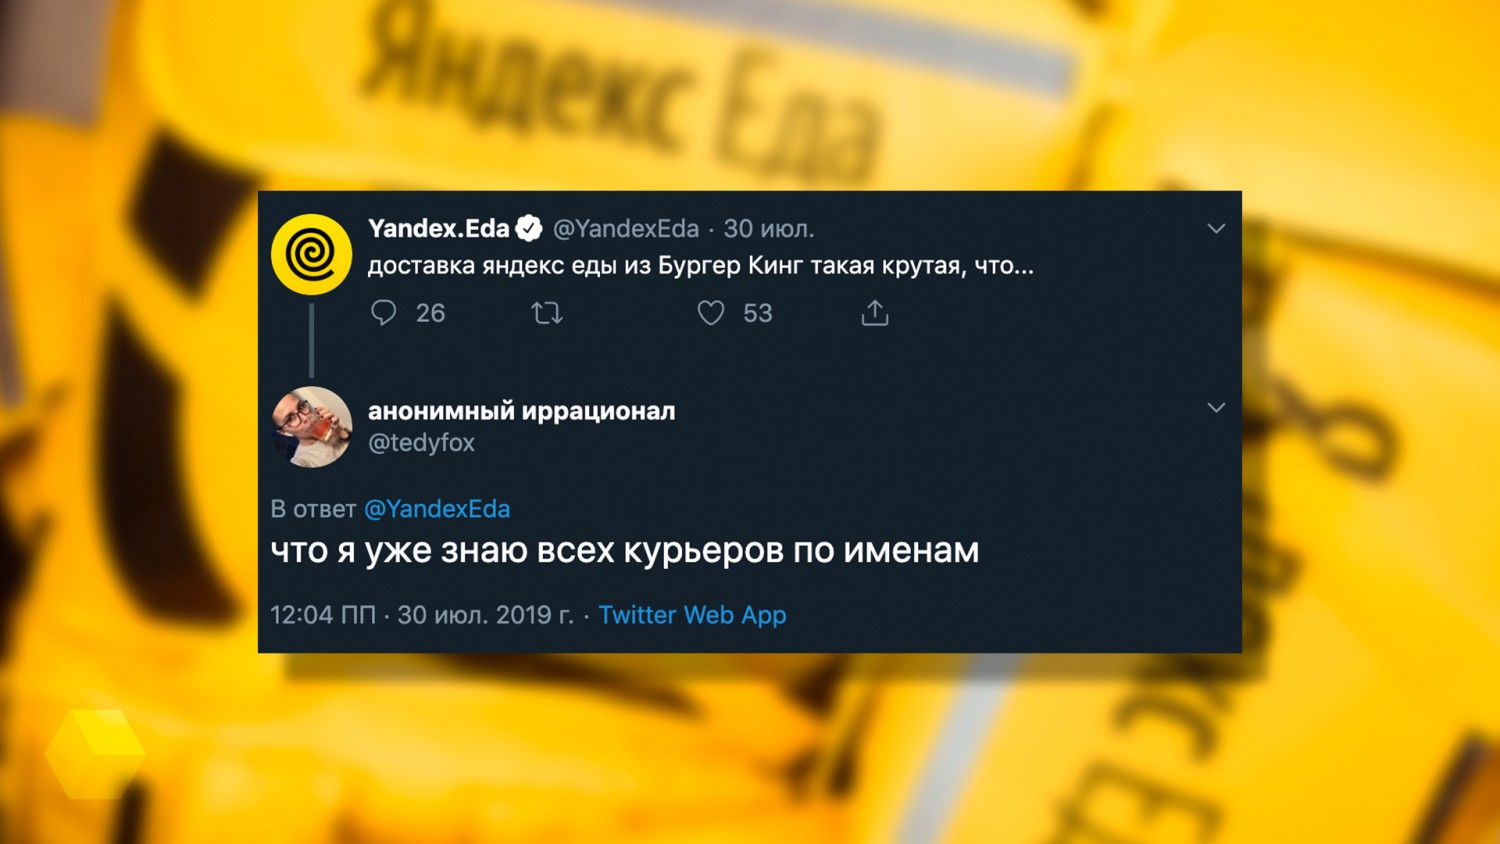 «Яндекс.Еда» запустила рекламу в Москве со скриншотами из Twitter